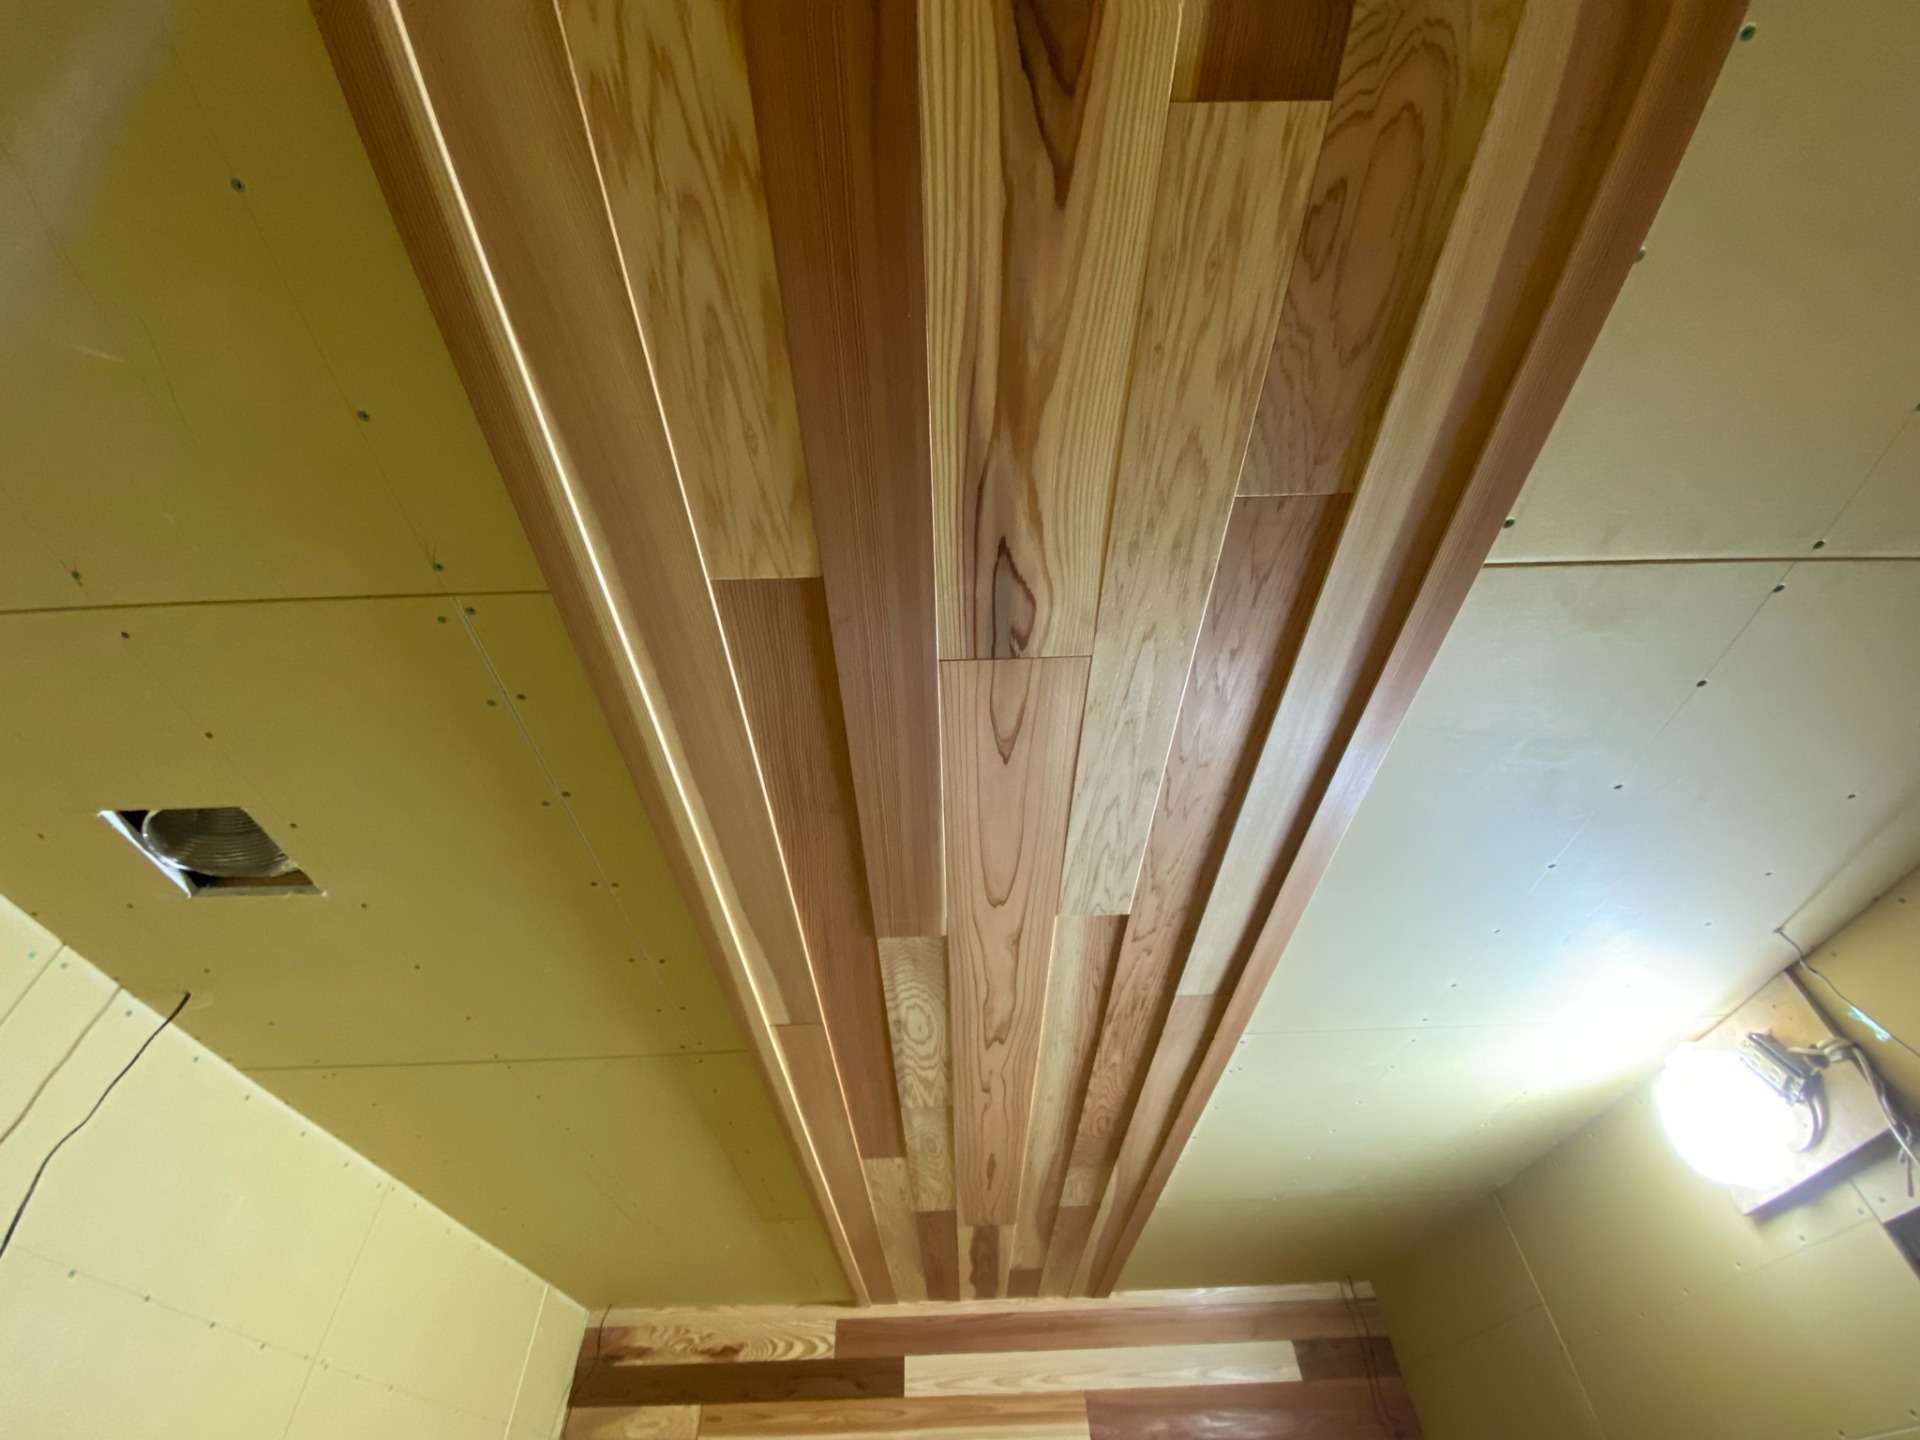 只今リフォーム中のお宅にて天井と壁に杉の木特有の濃淡を活かし、また板の暑さを変えて施工させていただいています。なかなかイメージ通りの良い感じに出来上がっています。もうすぐクロス工事にかかりますの仕上がりが楽しみですね。^^